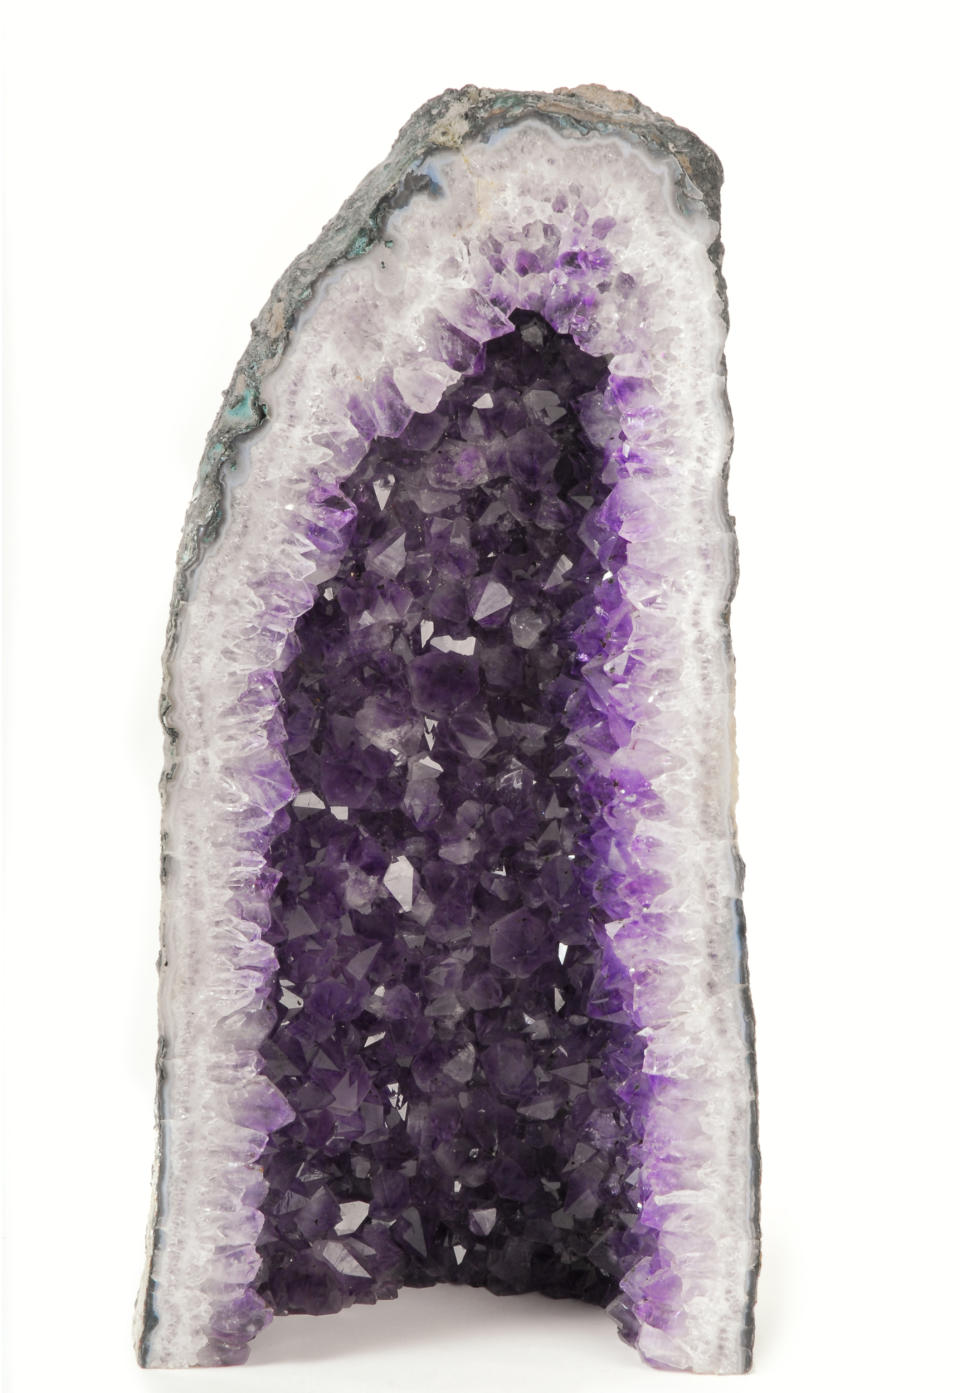 Das kräftige Lila in den „Gem Roots“ nennt sich „Purple Tourmaline“ und erinnert an die Farbe von Amethyst. (Bild: Rex Features)